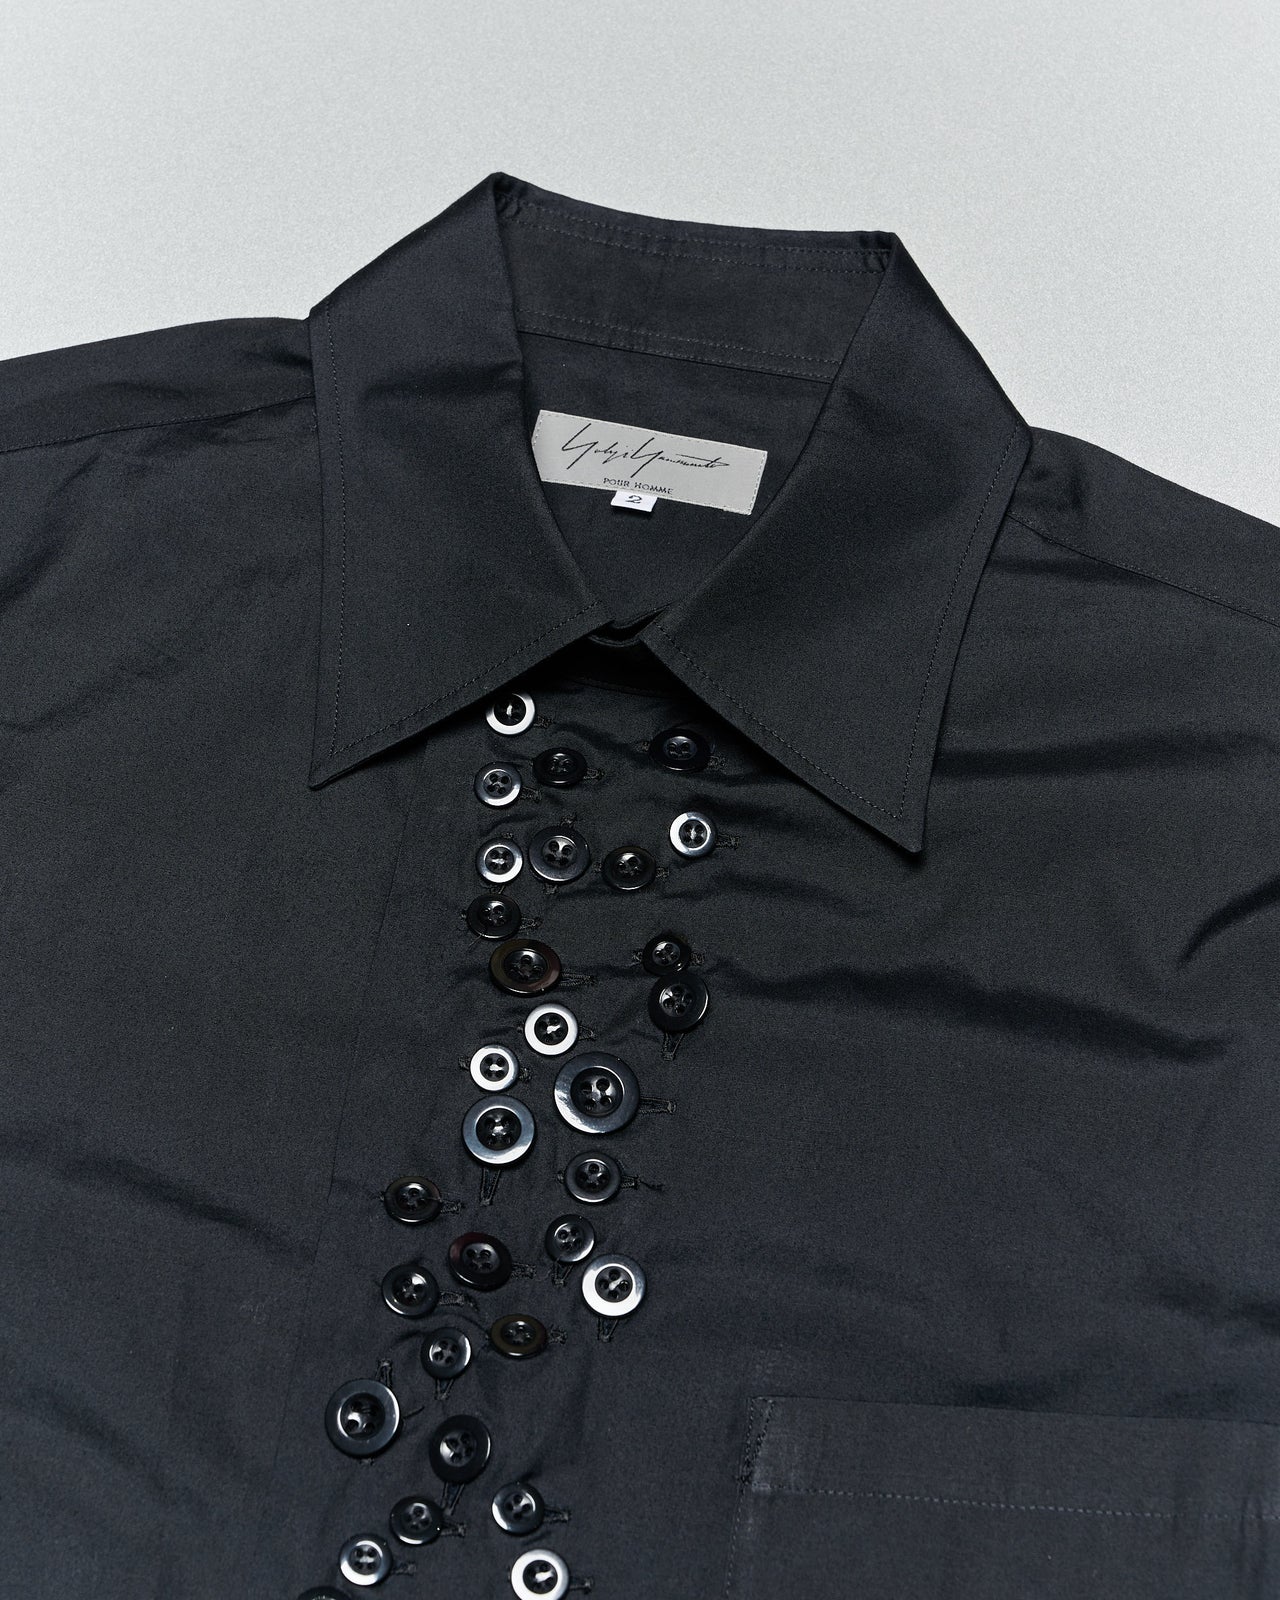 Yohji Yamamoto SS 2010 Many buttons collared shirt